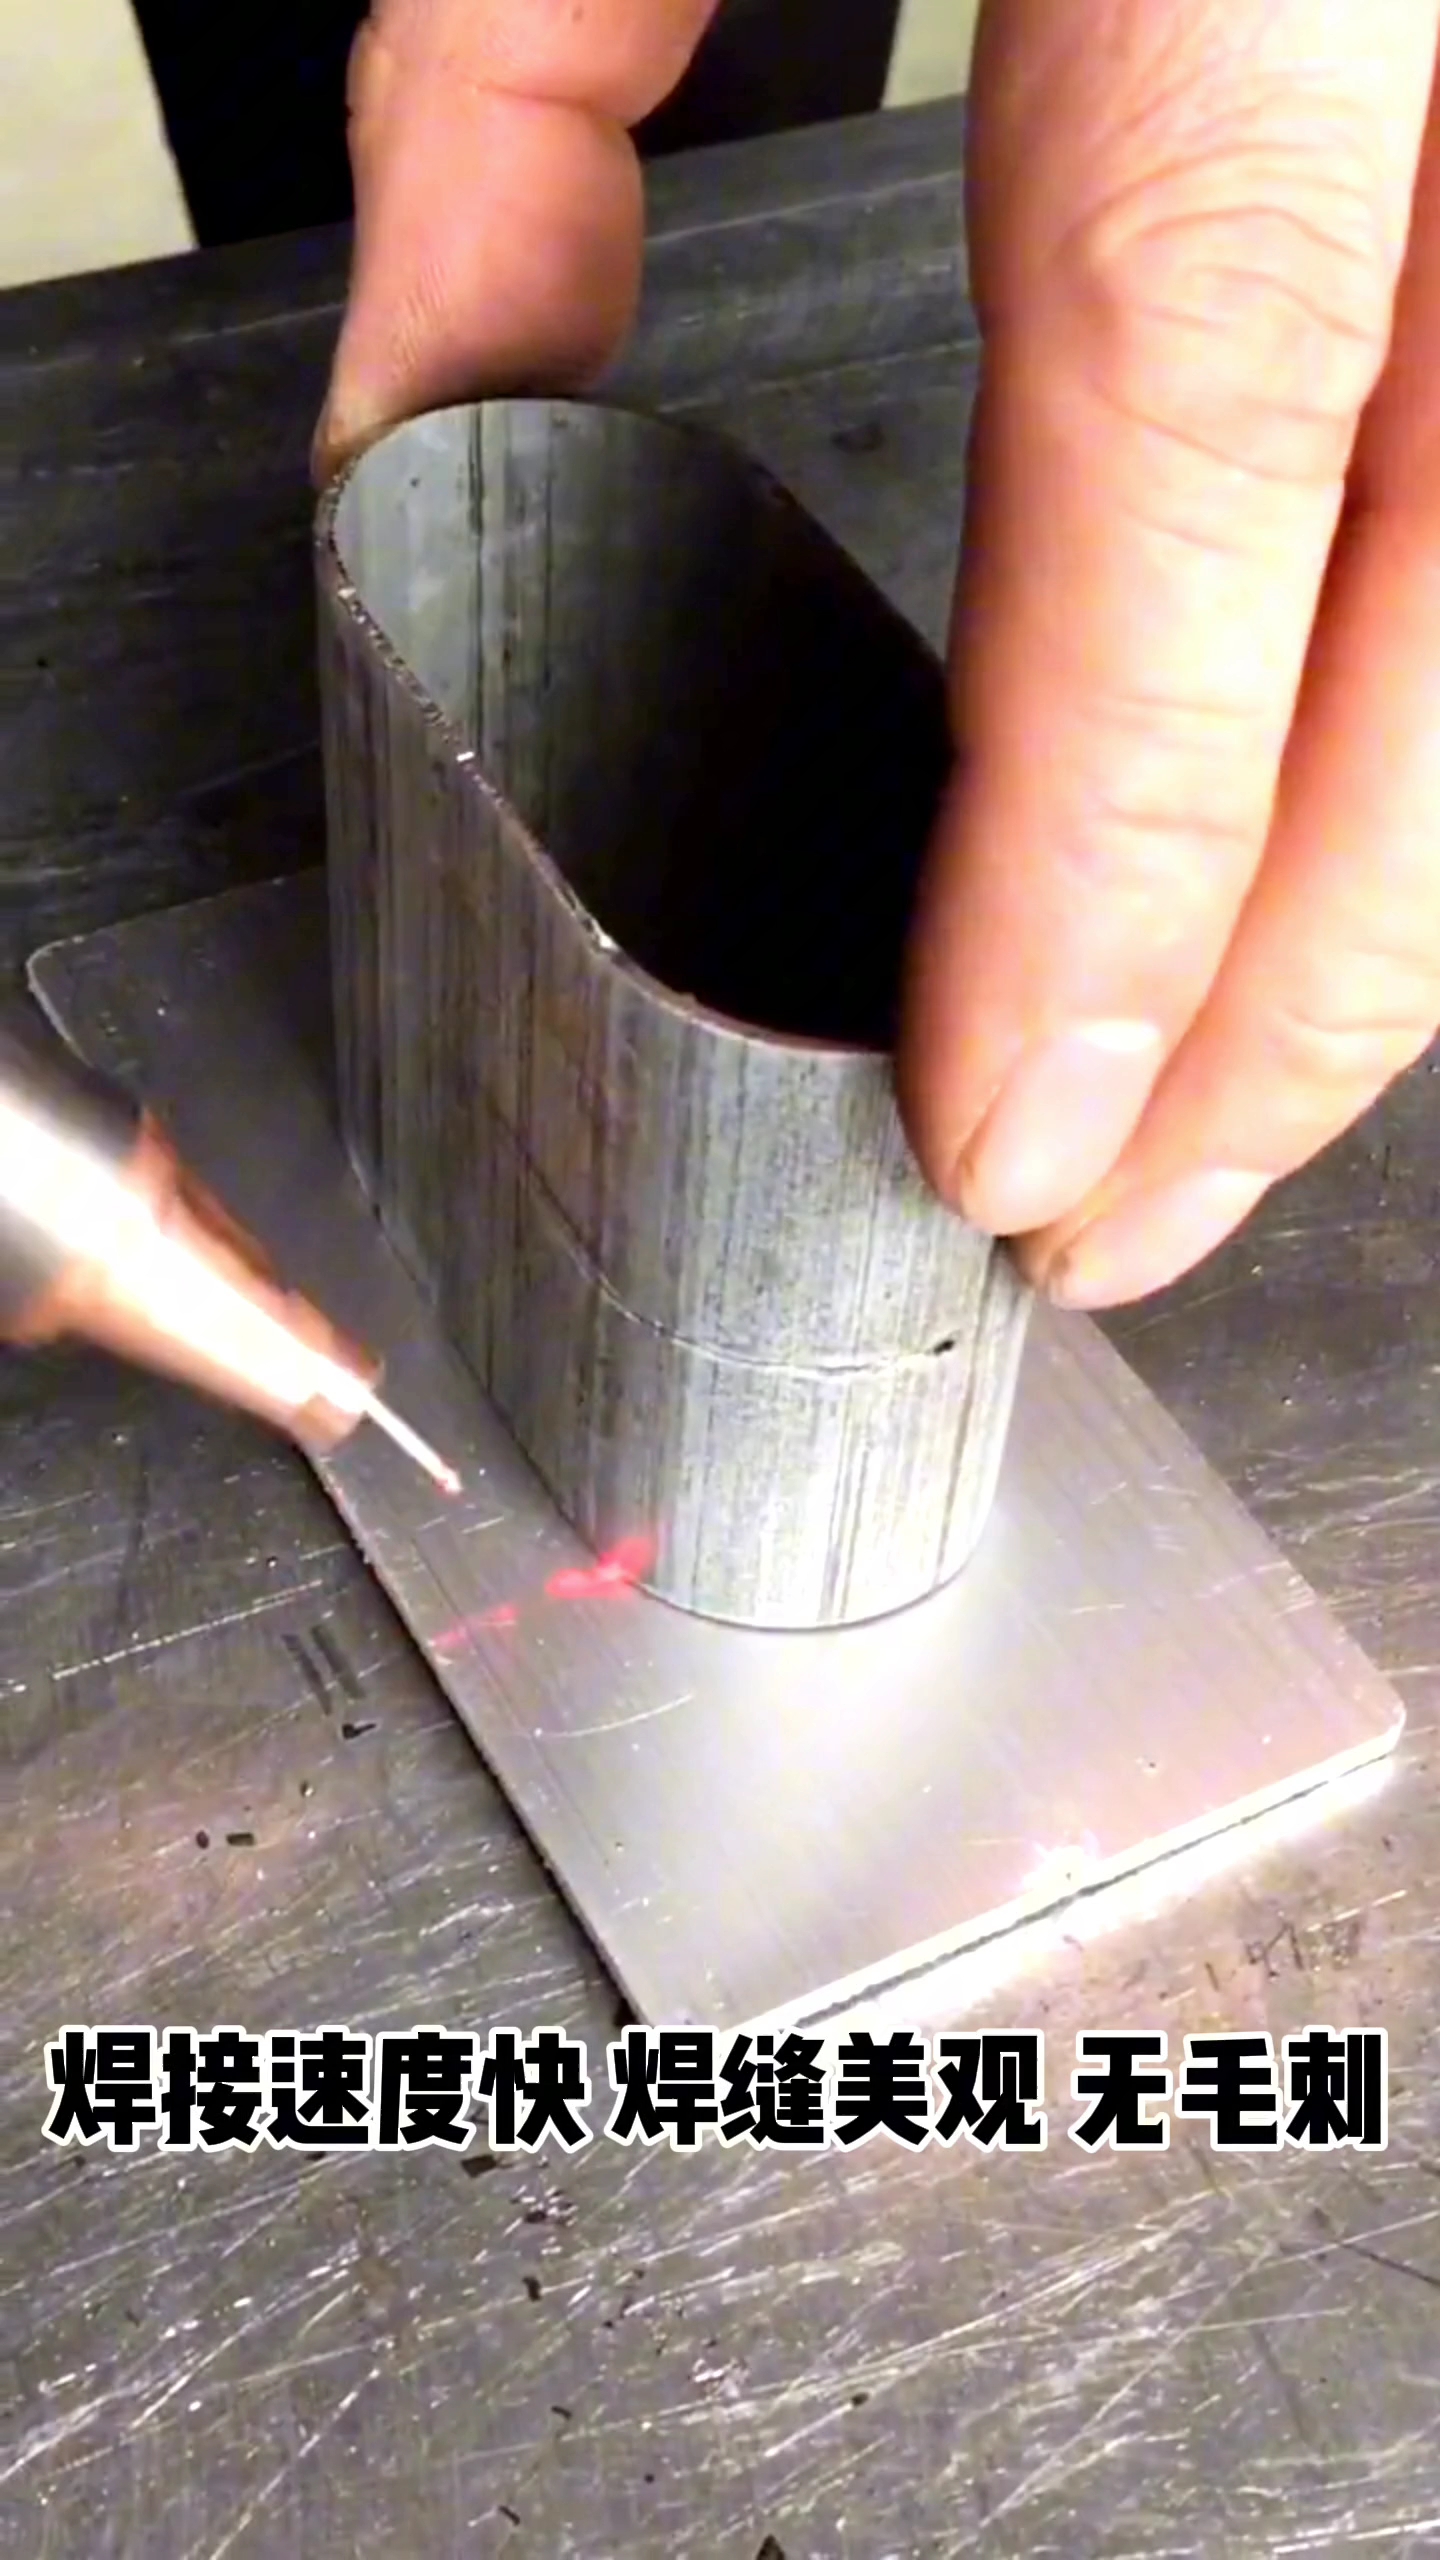 镭拓手持激光焊接机焊接速度快焊缝美观#手持激光焊接机 #激光焊接机#